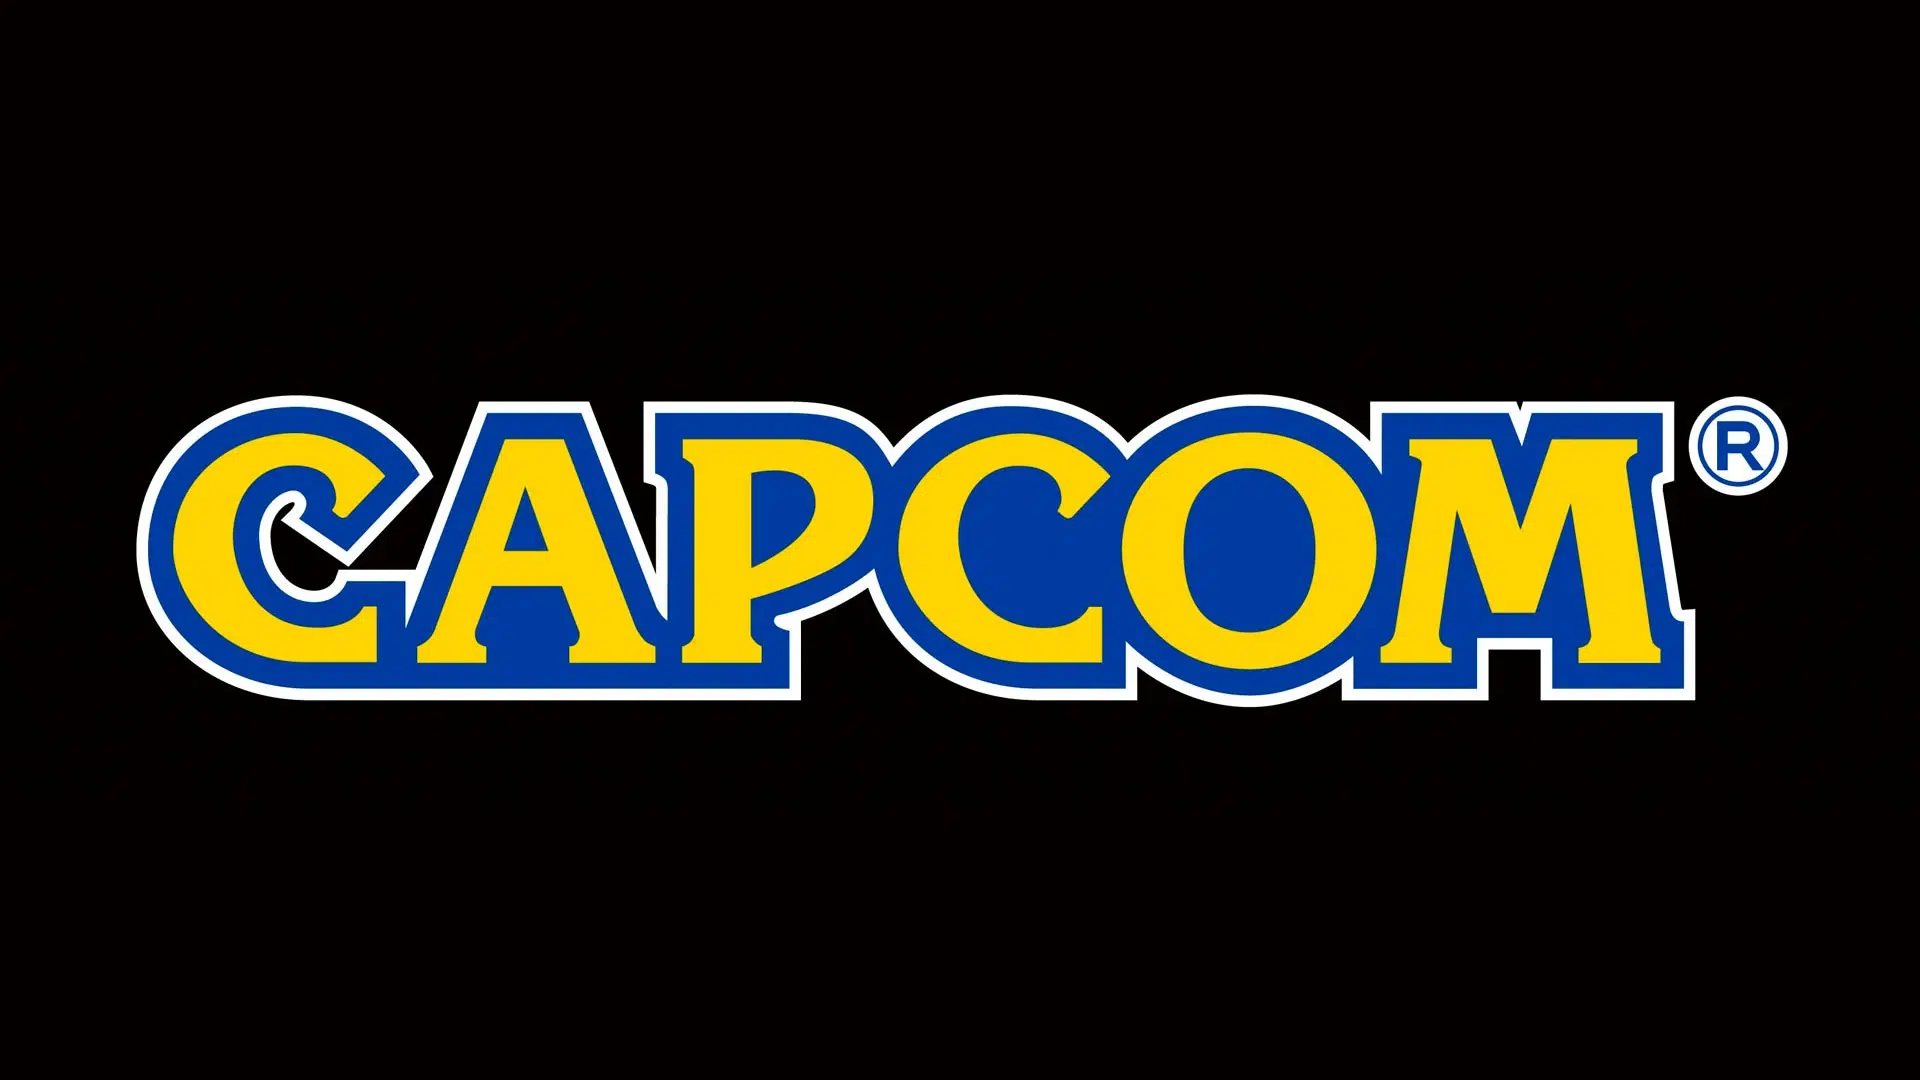 Capcom unannounced title